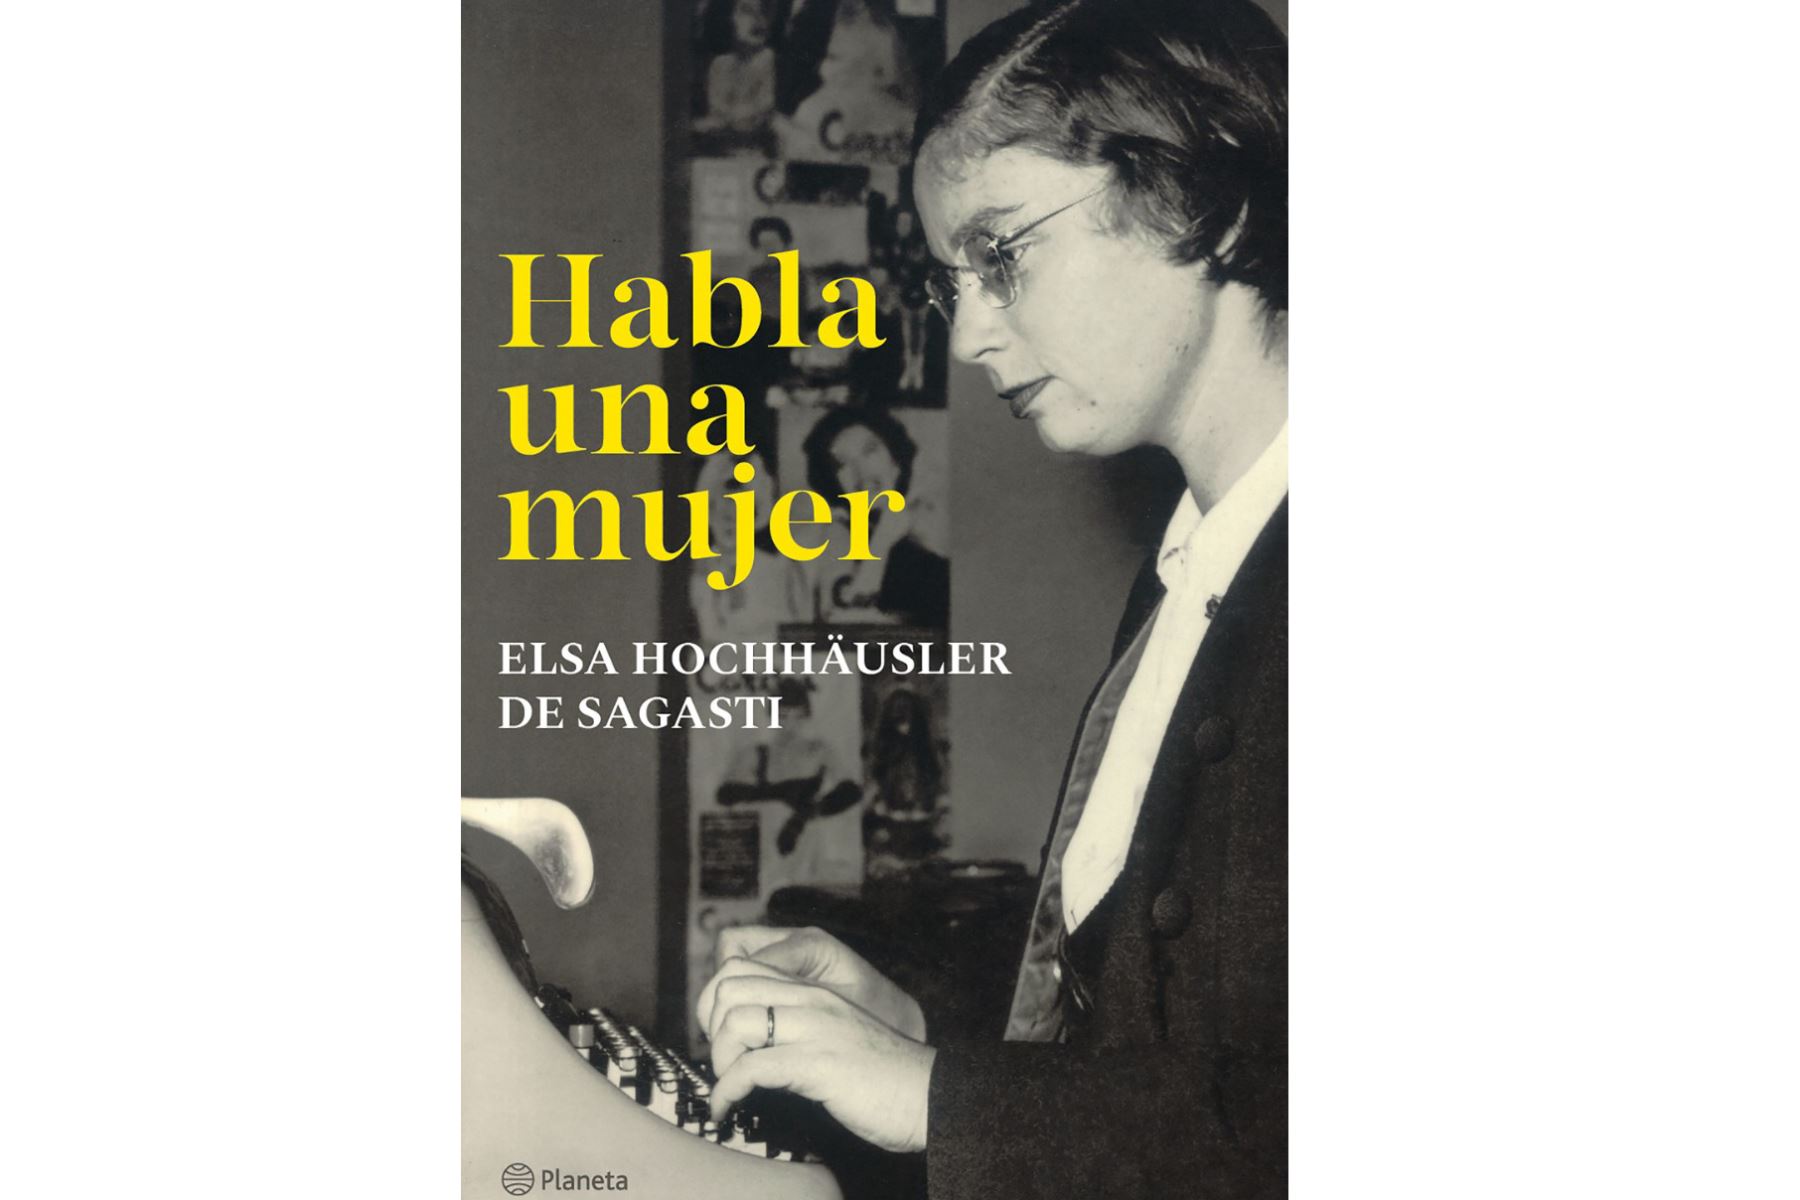 Presentan libro "Habla una mujer" que recoge artículos y columnas de opinión de Elsa Hochhäusler de Sagasti. ANDINA/Difusión